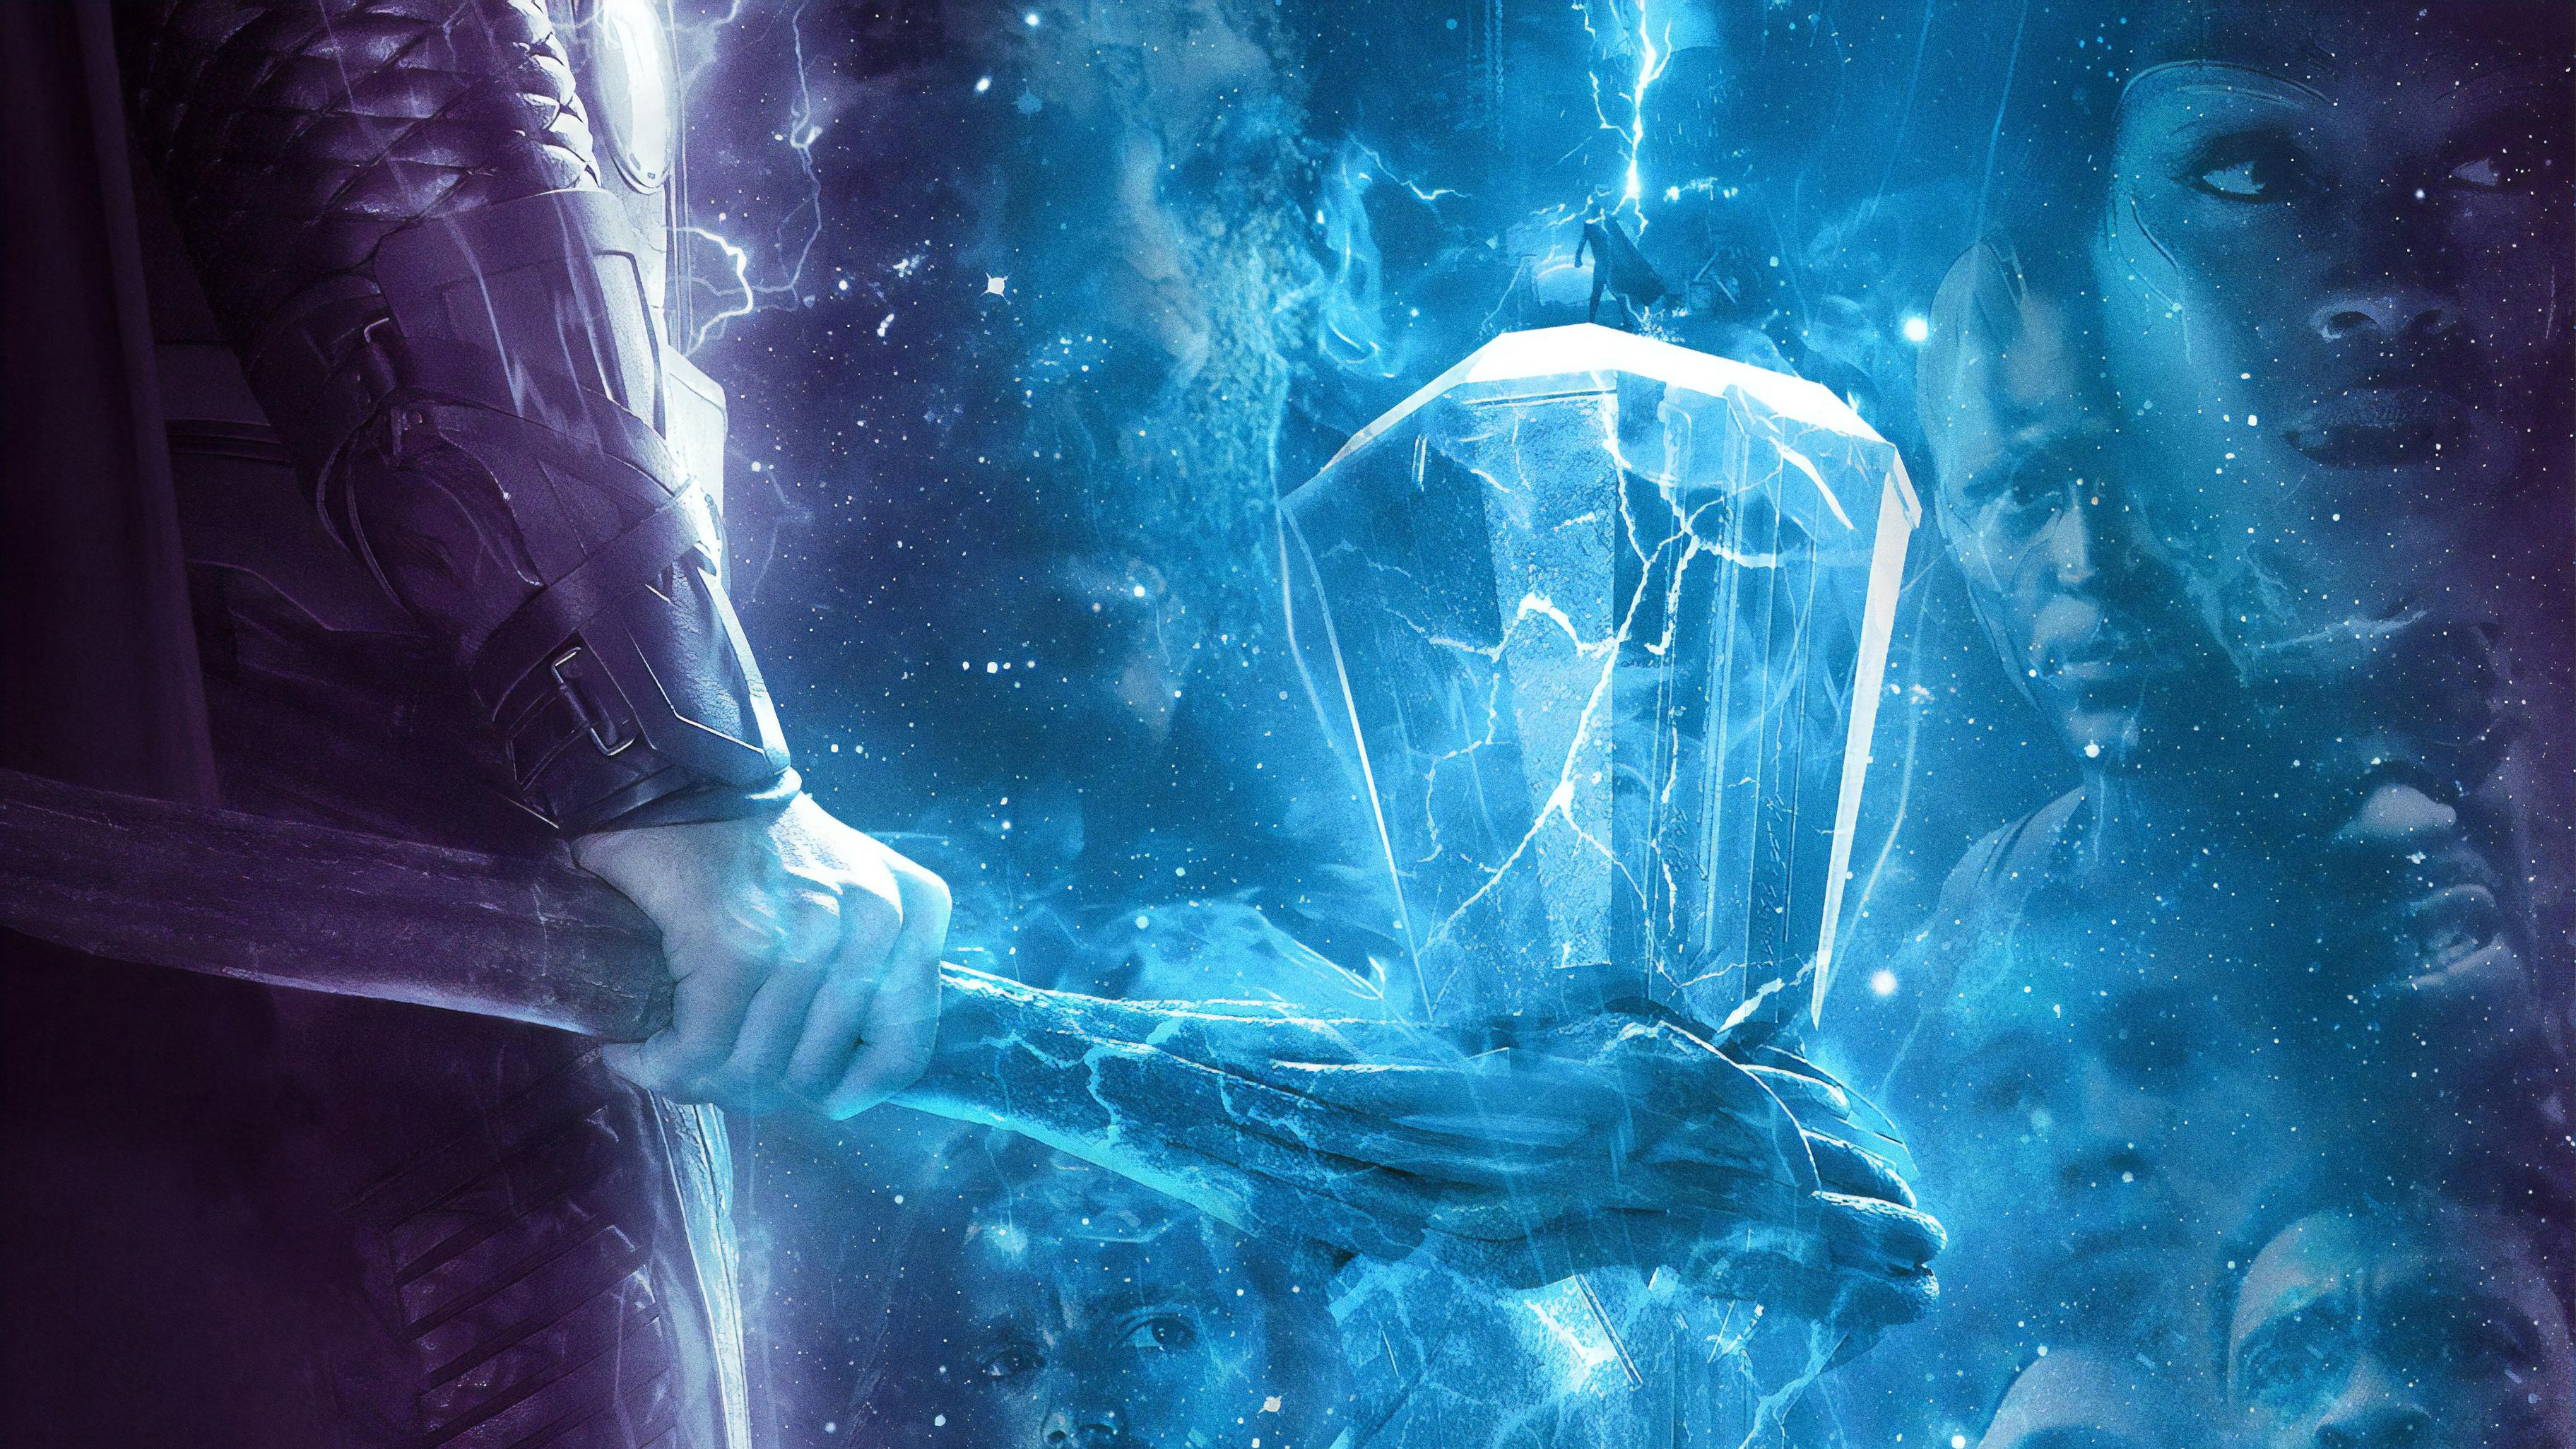 Avengers Endgame Thor Hammer Poster 4k, HD Movies, 4k